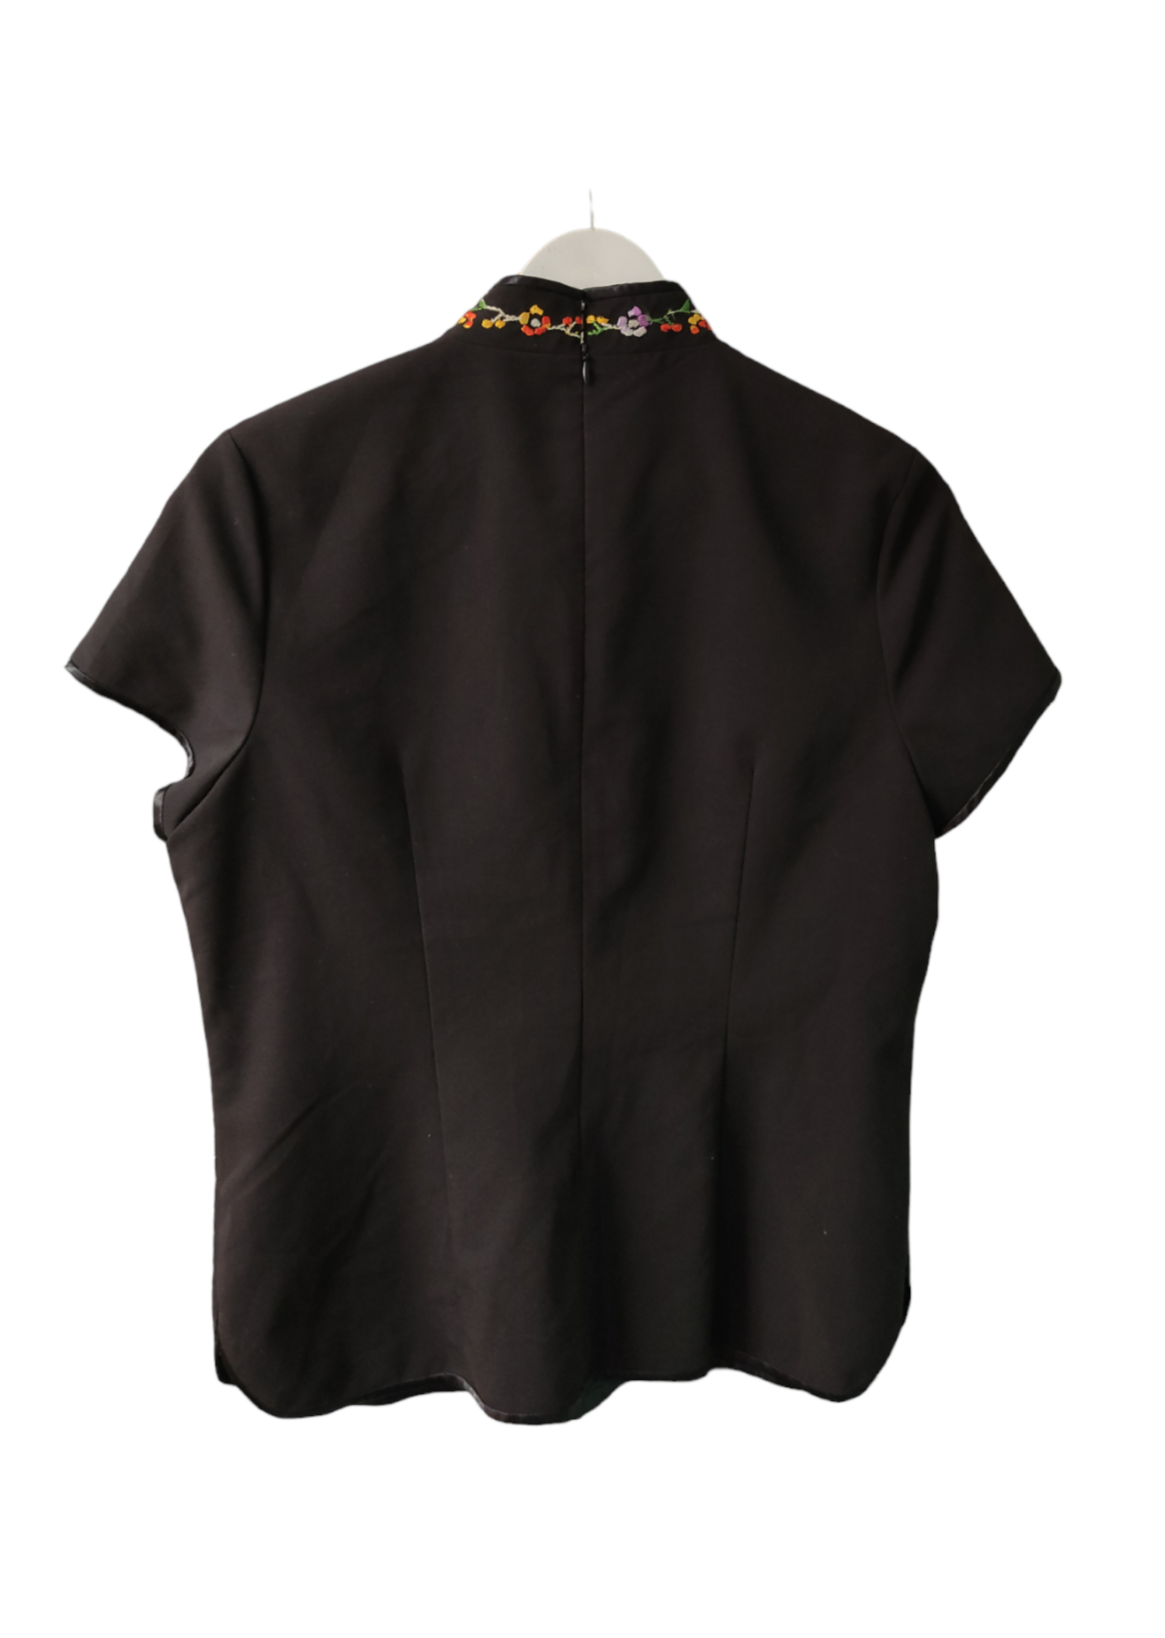 Ιδιαίτερη Γυναικεία Μπλούζα ANNA B. σε Μαύρο Χρώμα (Medium)